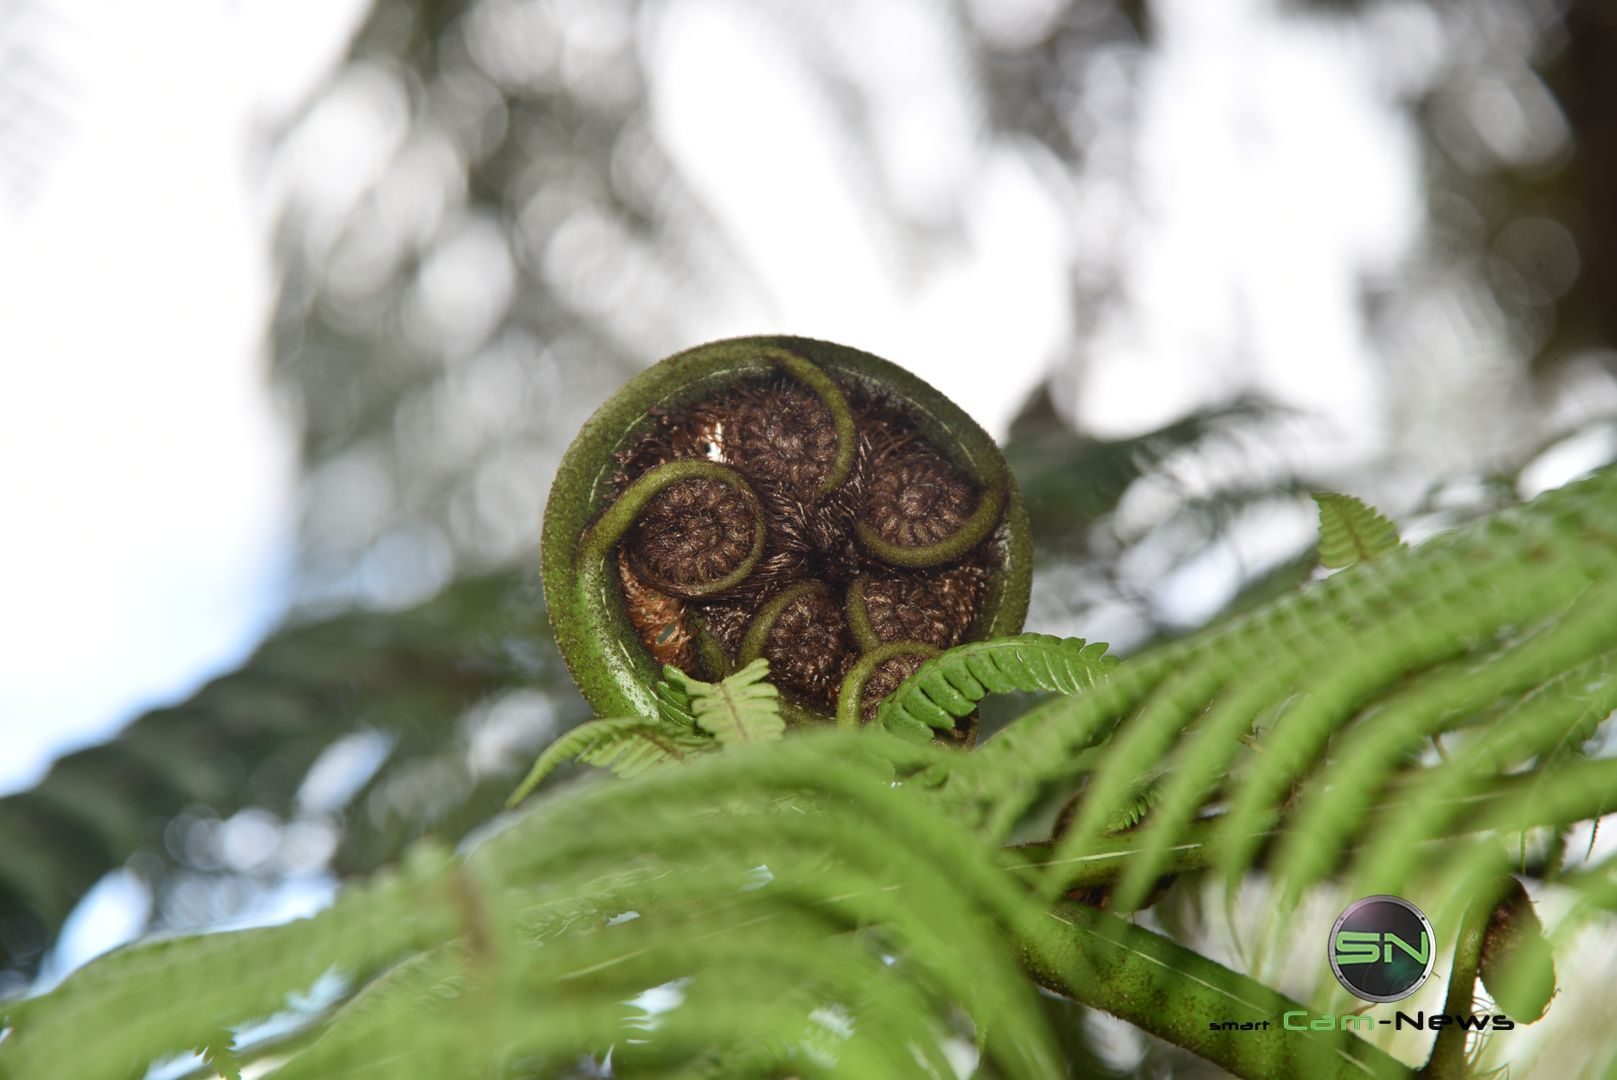 fleischfressende Pflanzen - Neuseeland - Nikon D750 - SmartCamNews